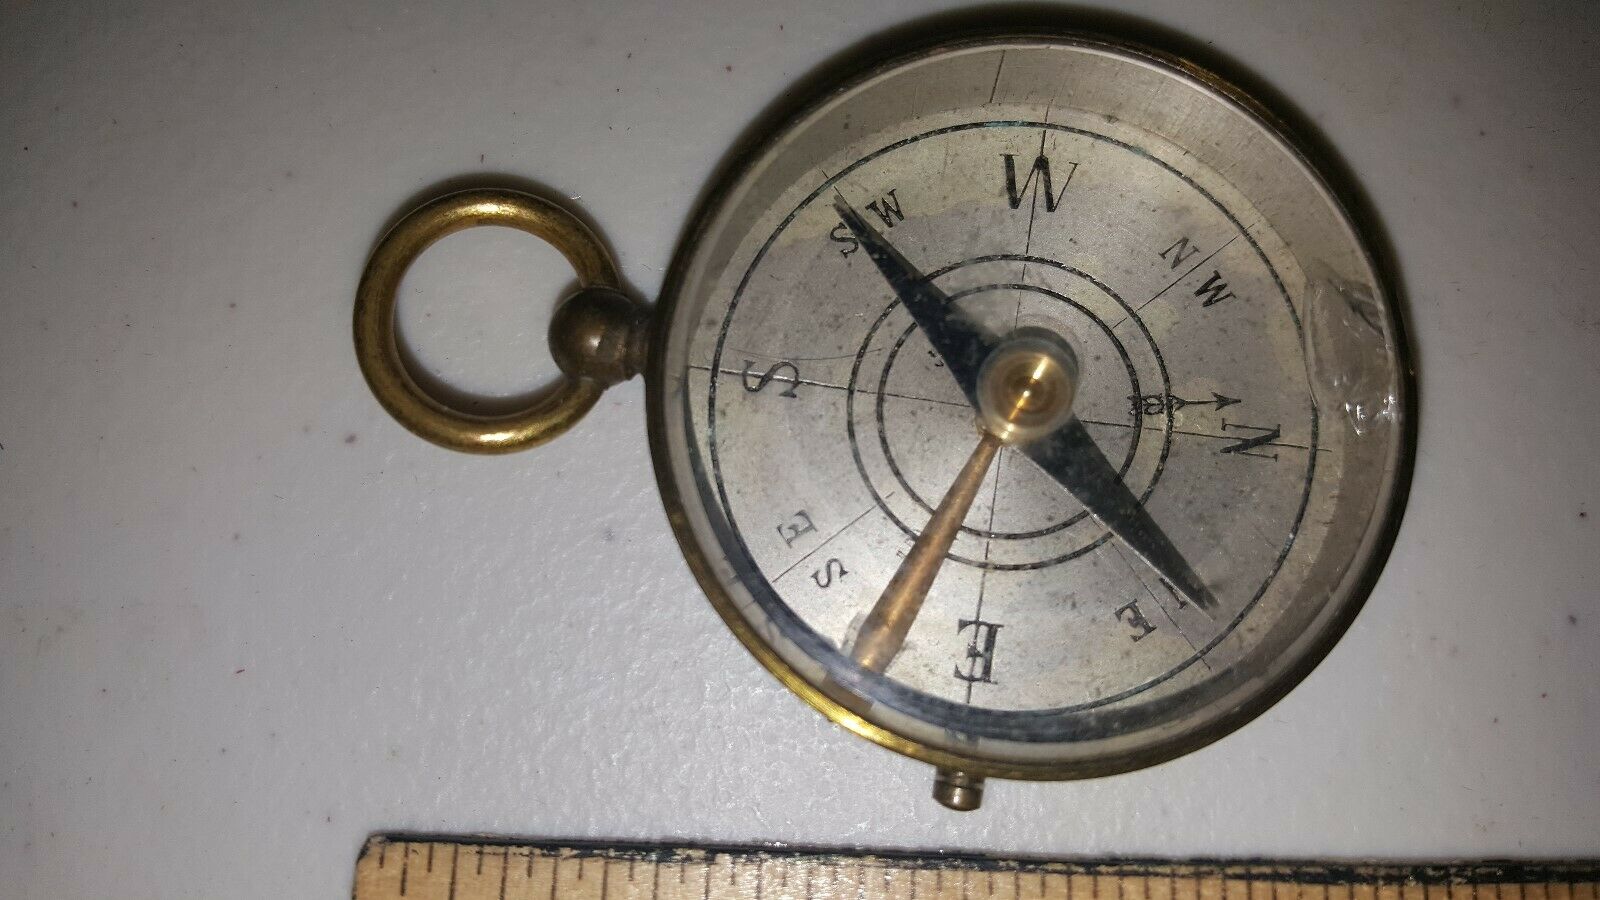 Antique Brass & Glass Compass W Lock Mechanism Ww2 Era Look! France?